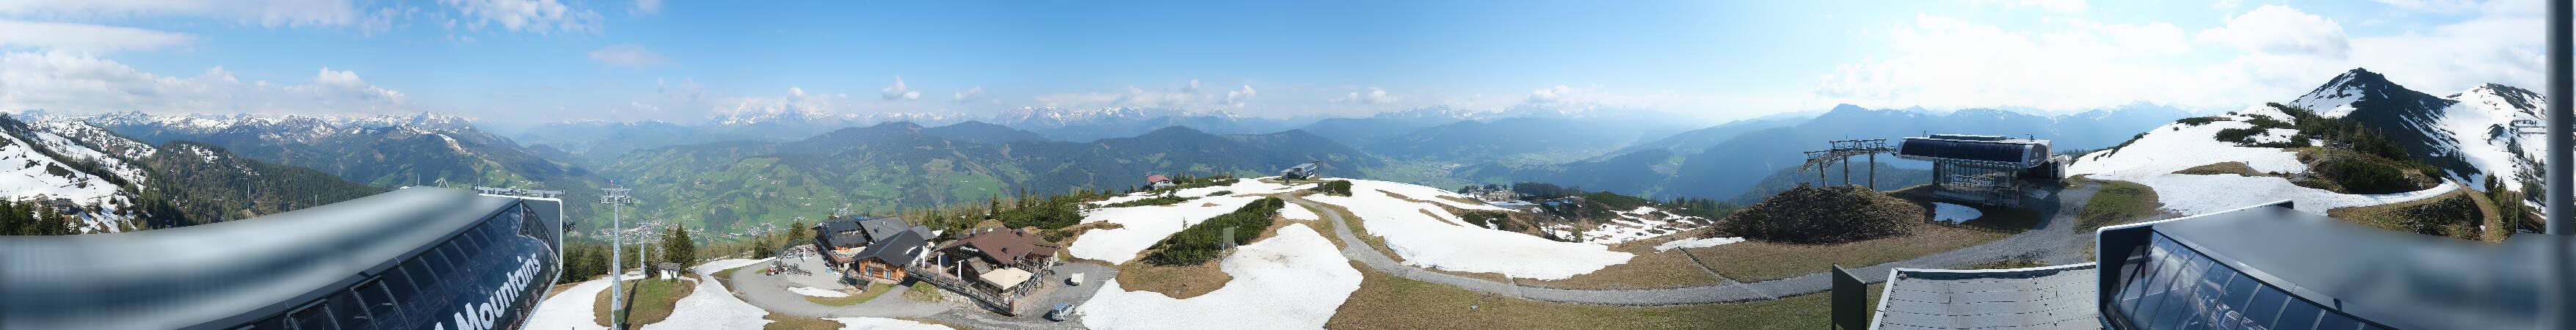 Flachau webcam - Flying Mozart top ski station